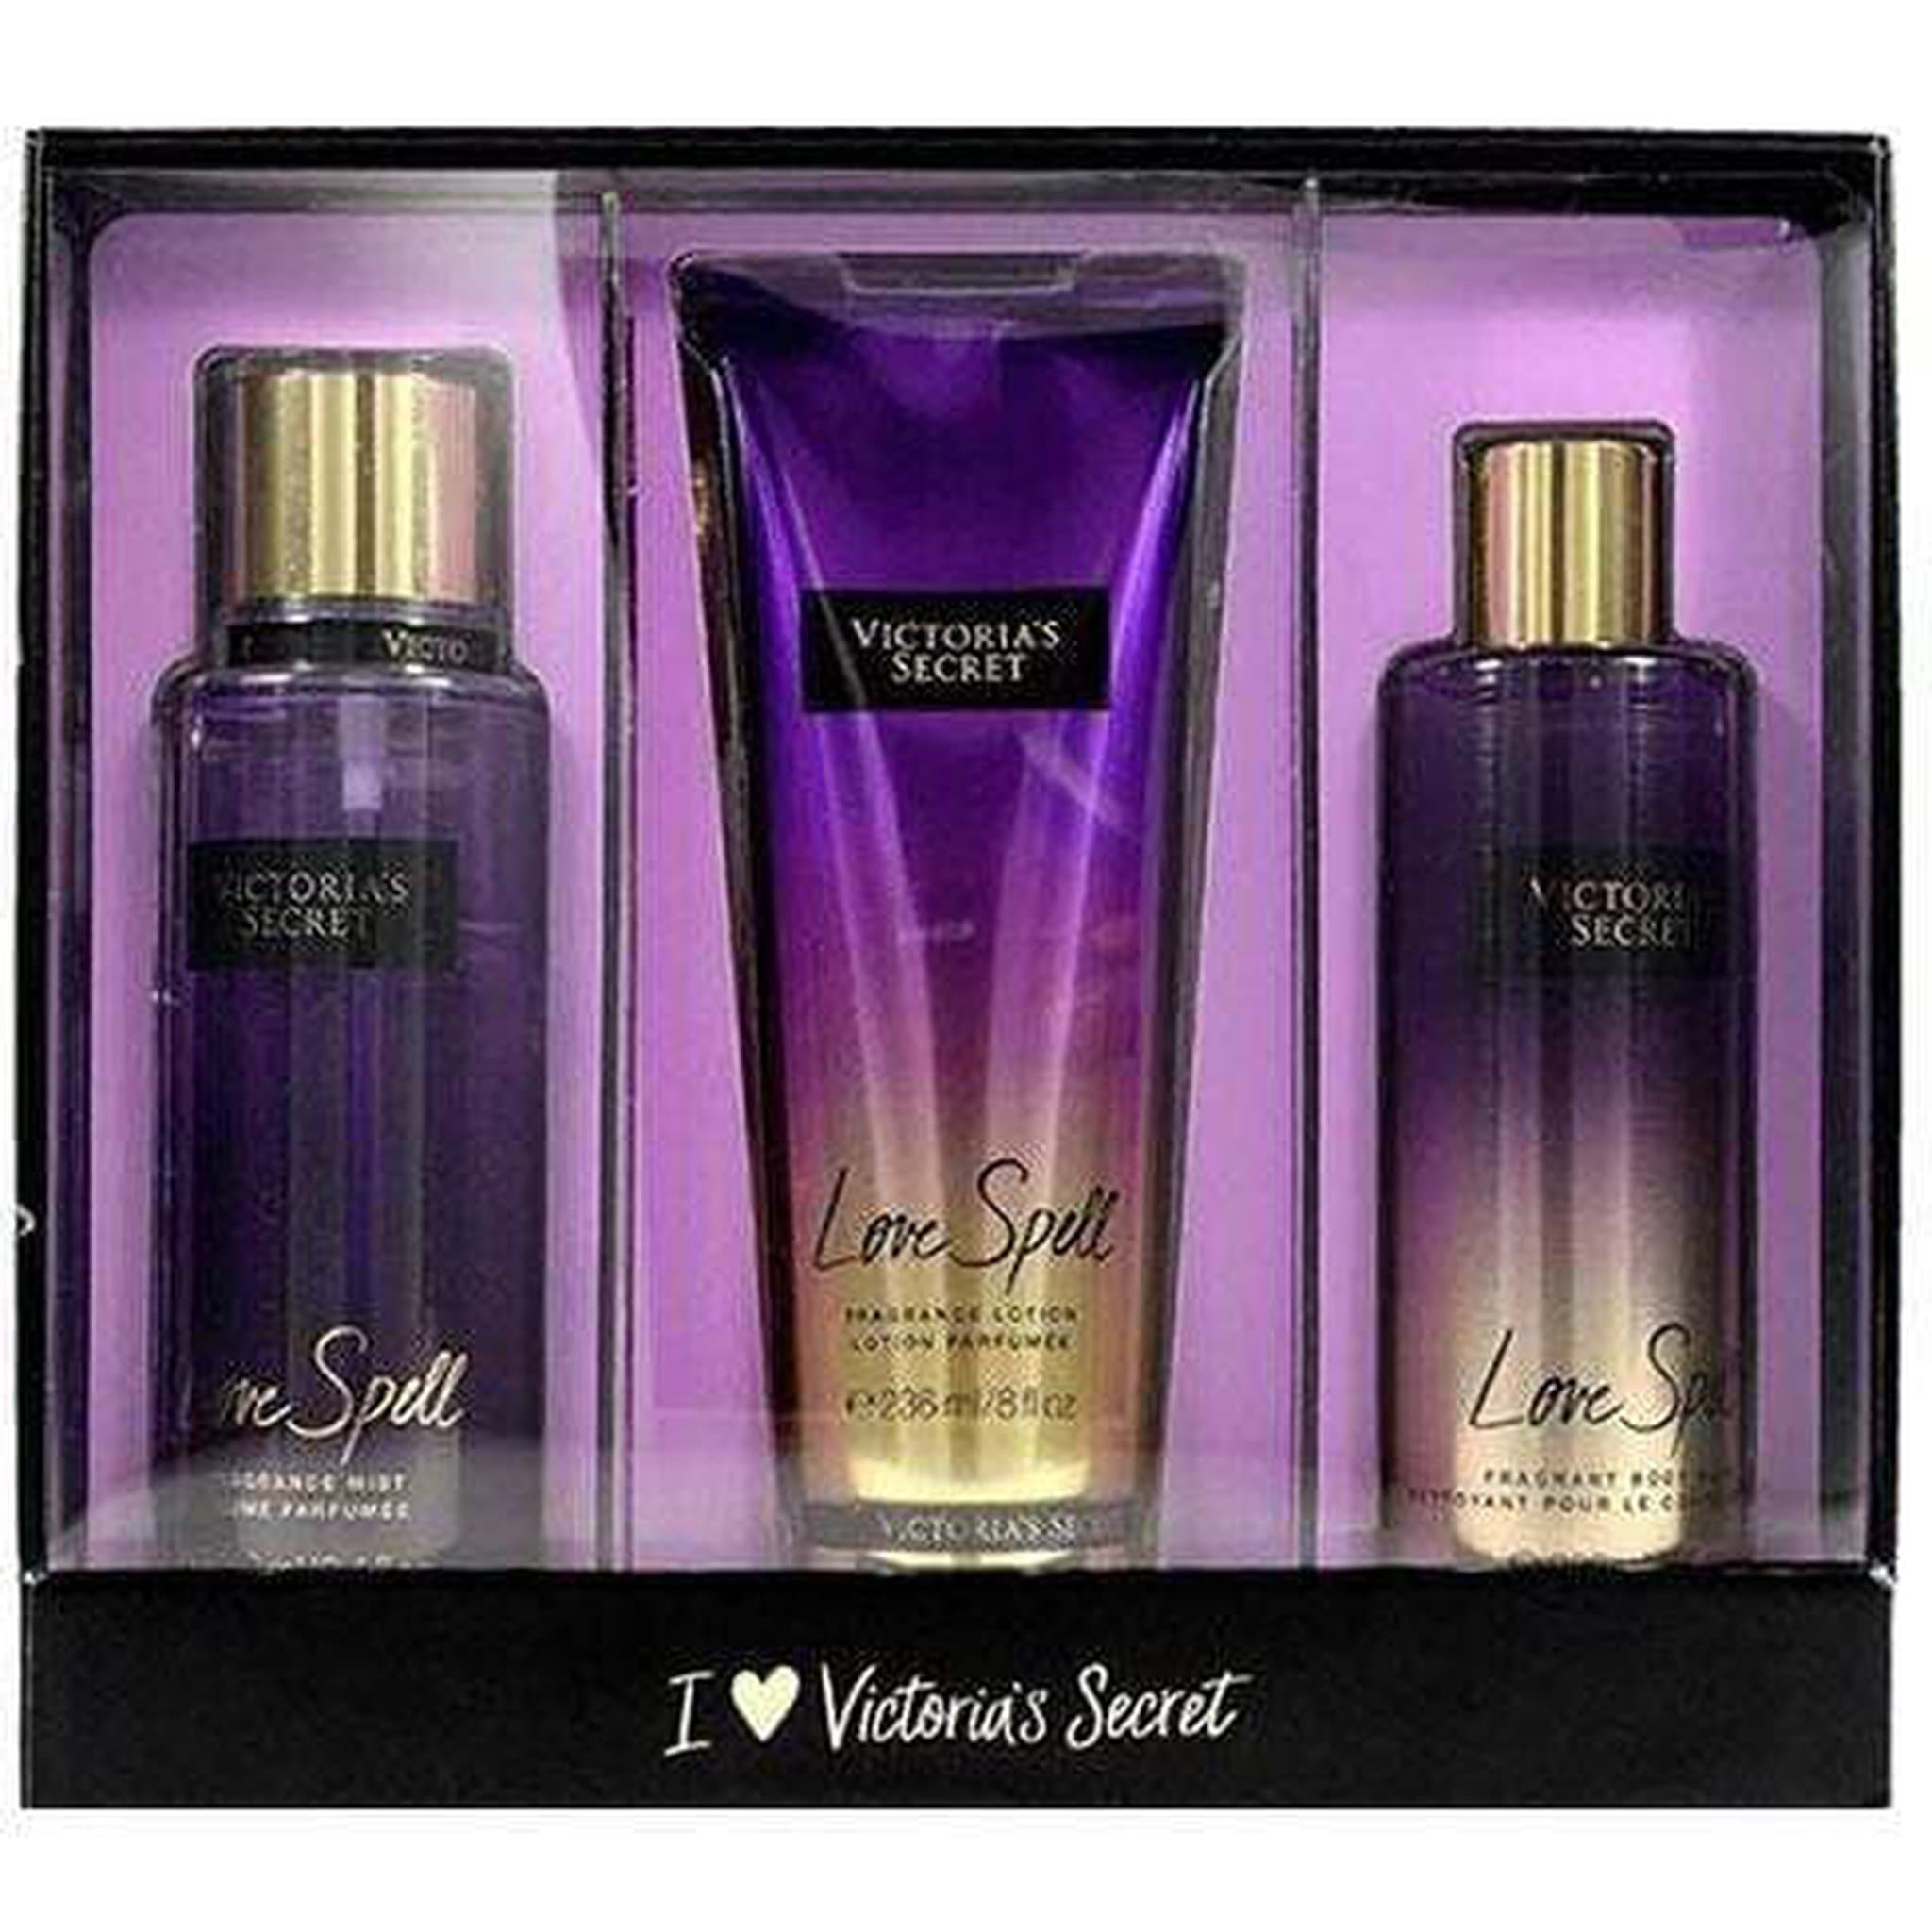 Love Spell Fragrance Oil - Victoria's Secret Type